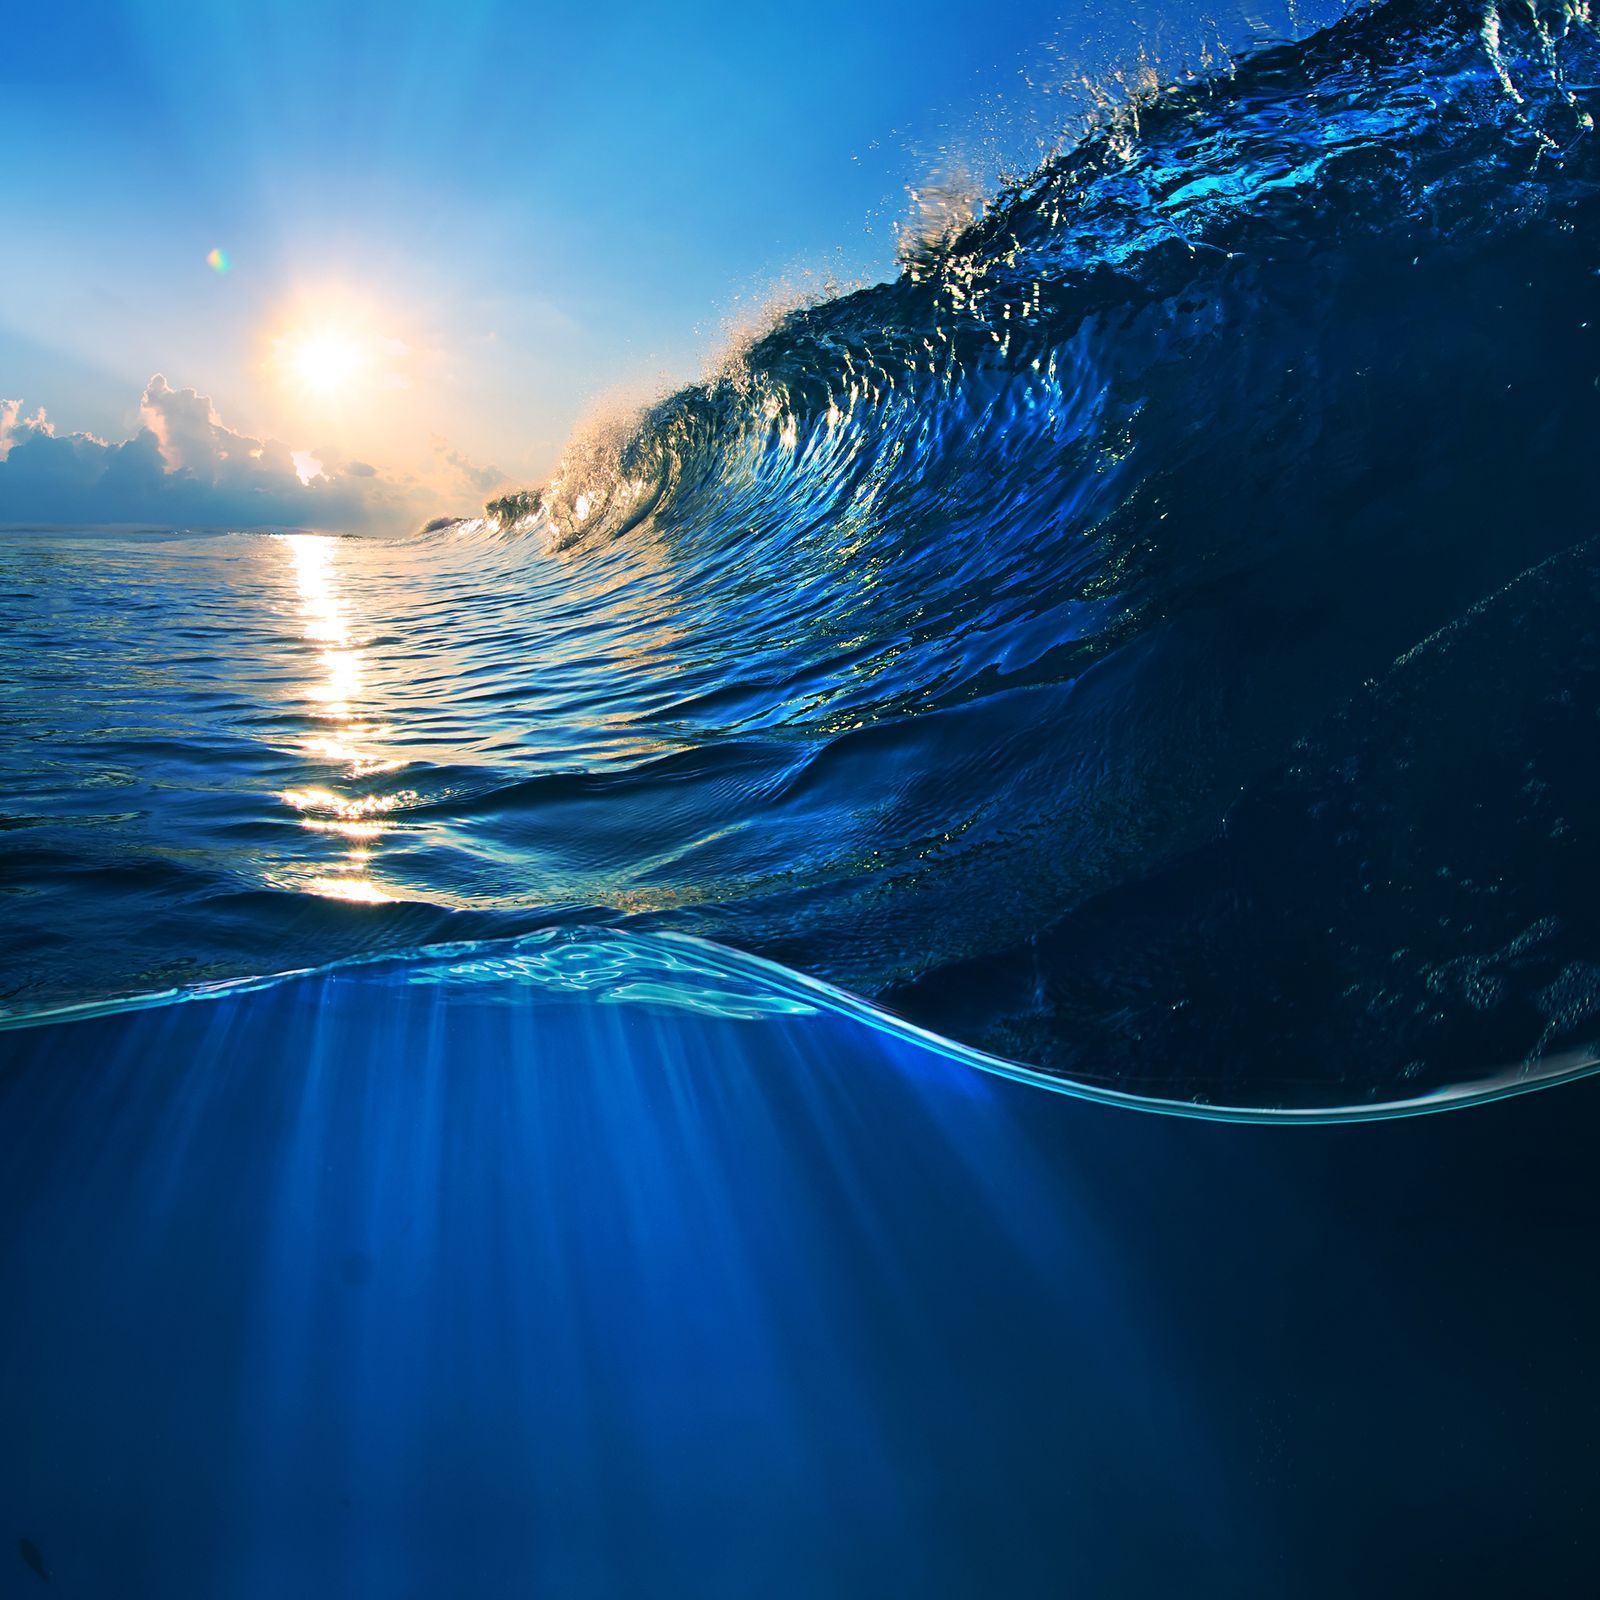 CODAGALERIE / Světový den oceánu / Shutterstock / 14